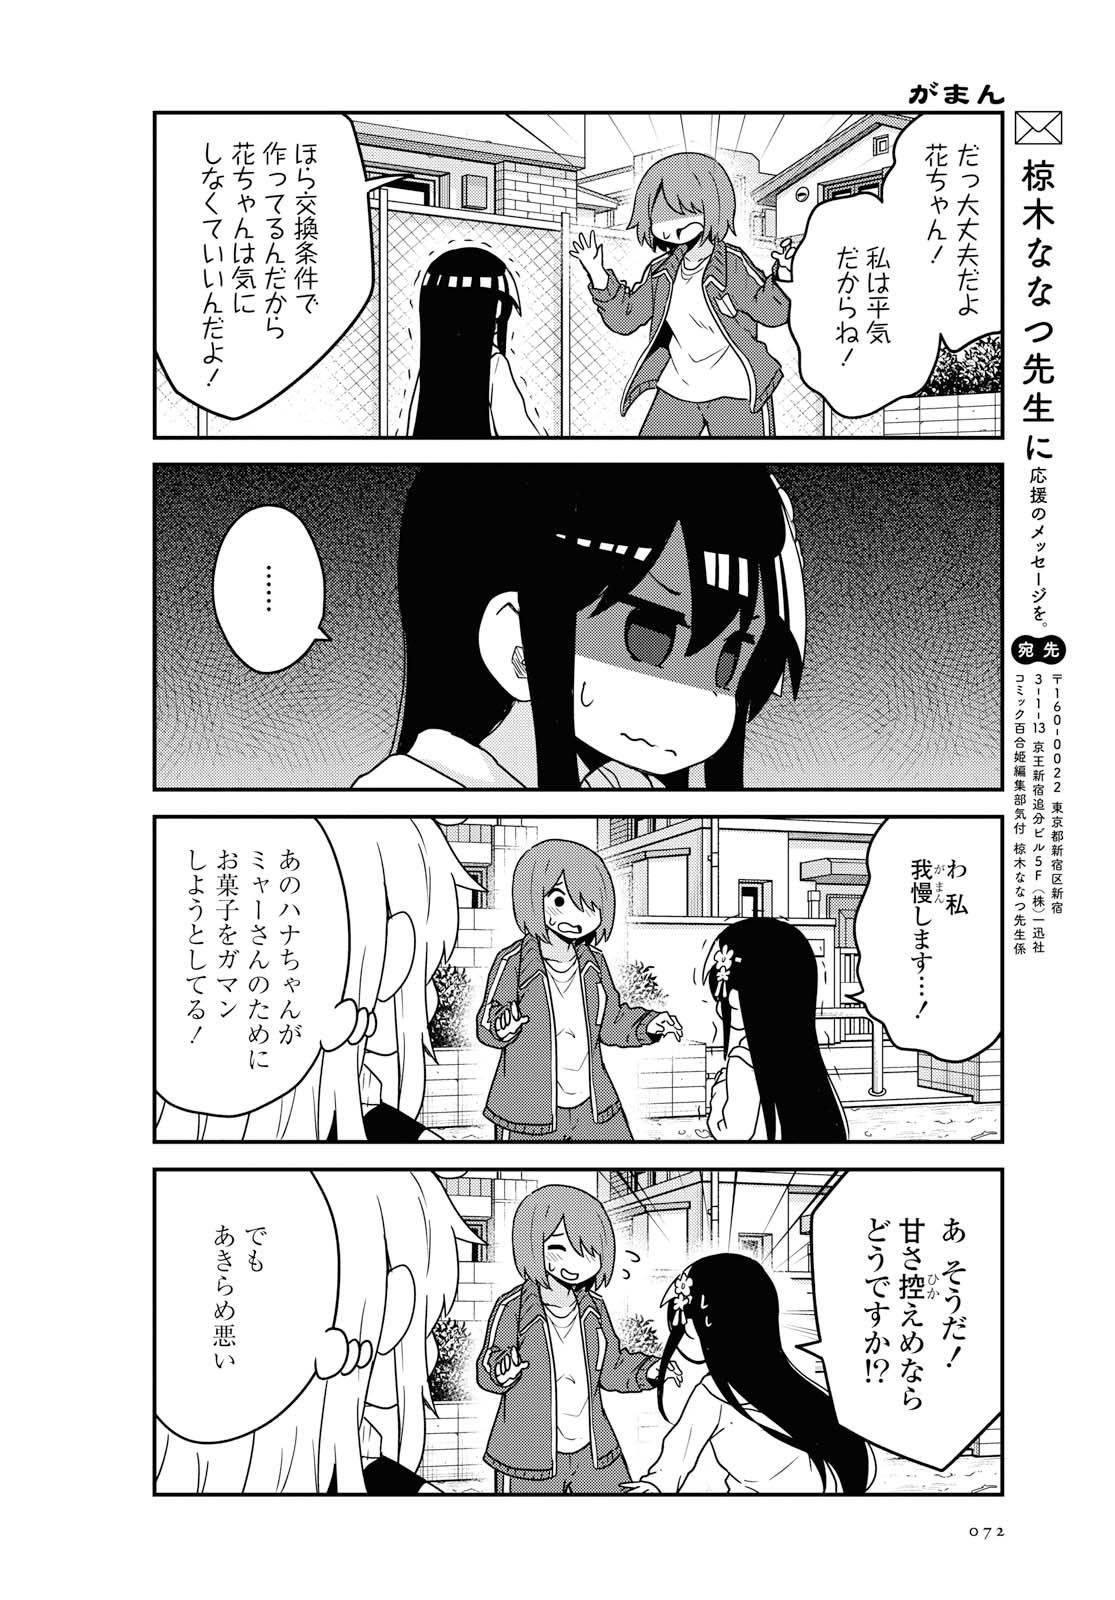 Watashi ni Tenshi ga Maiorita! - Chapter 63 - Page 14